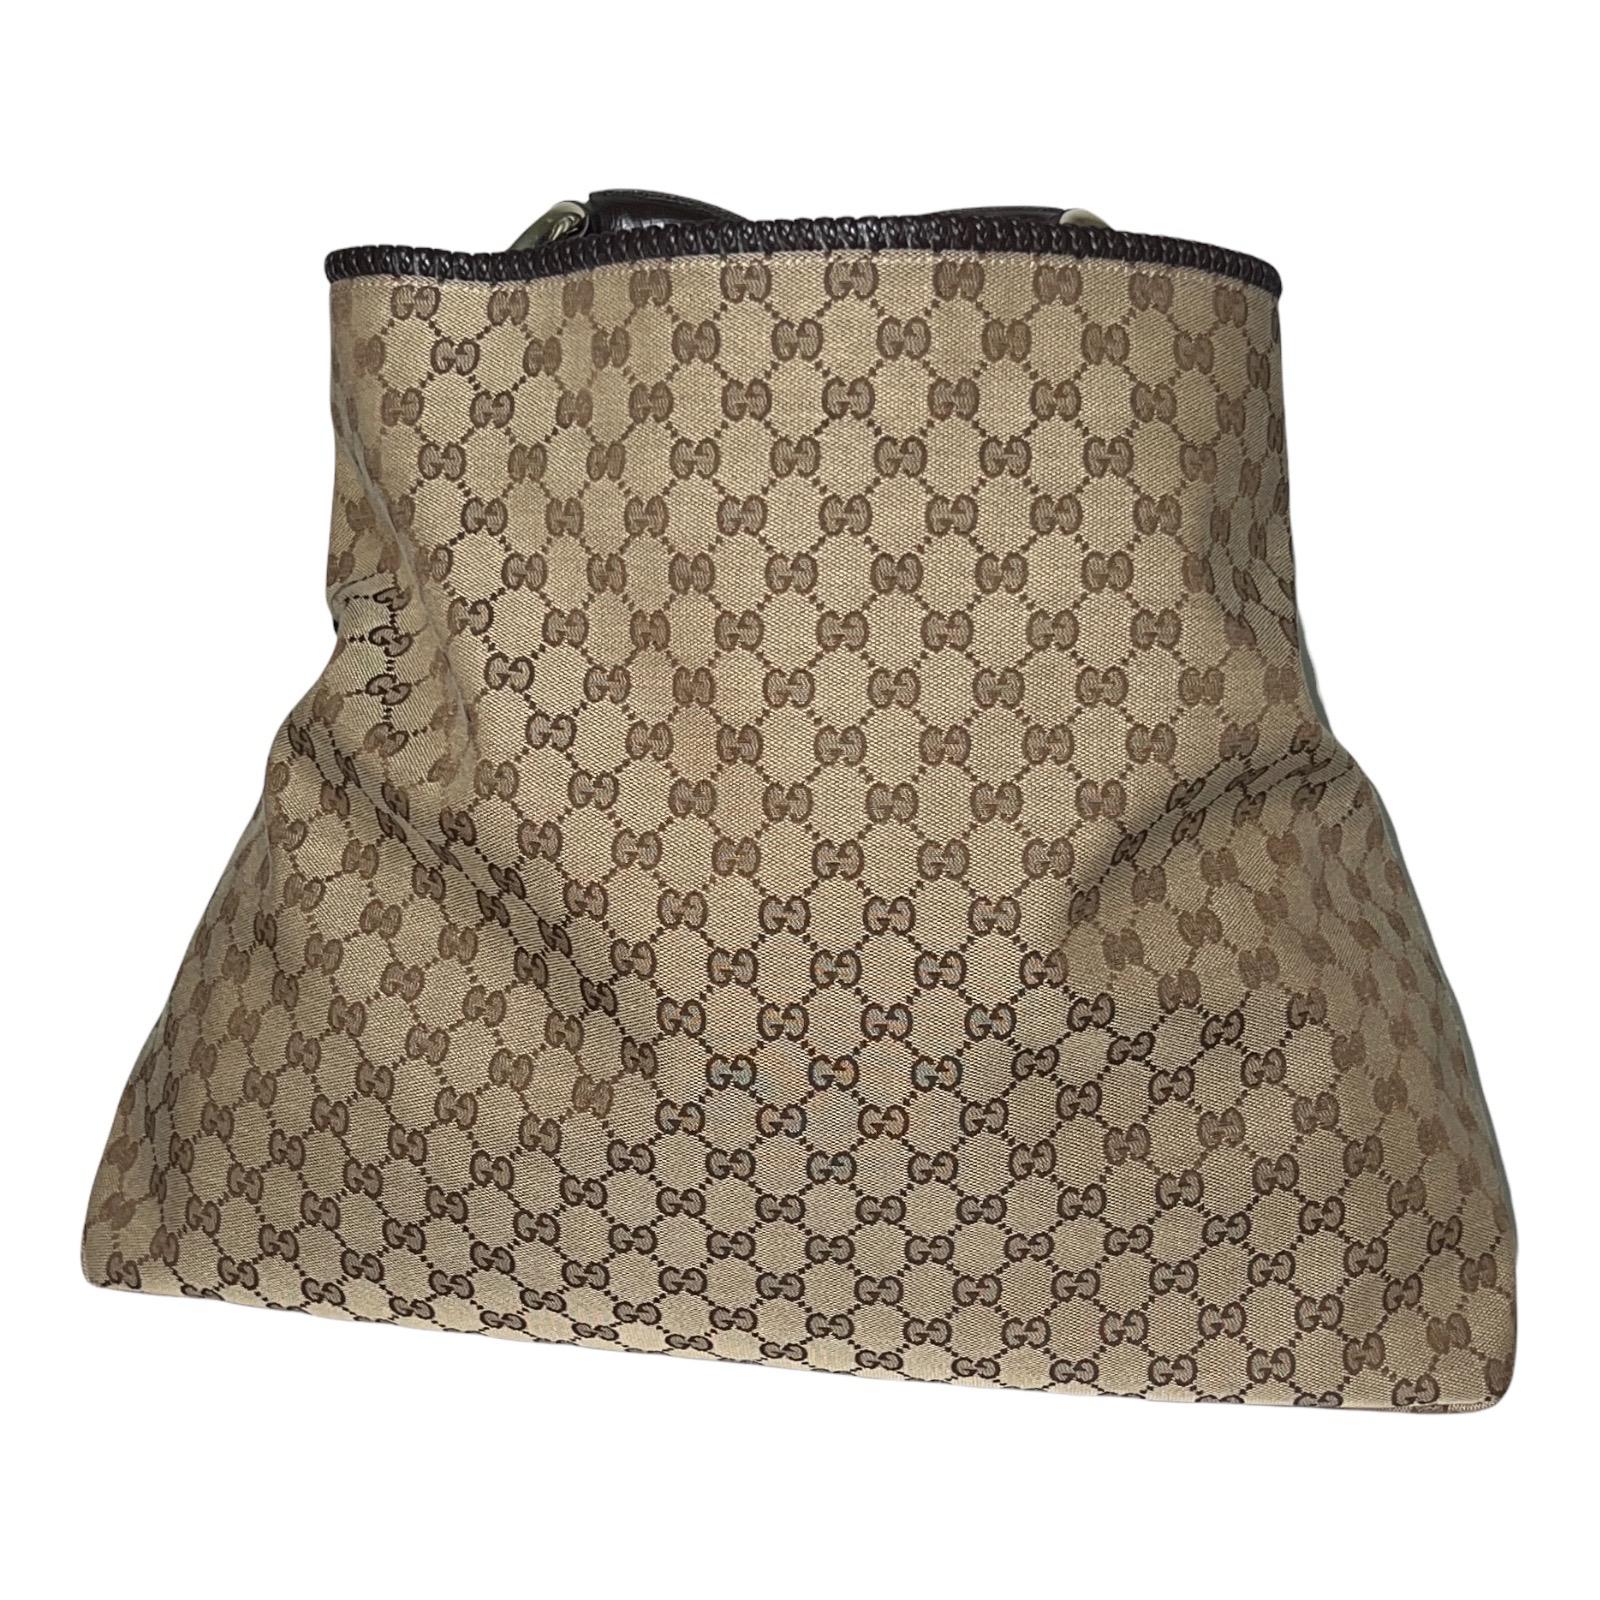 Brown UNWORN Gucci GG Monogram Canvas XL Hobo Bag Satchel with Horsebit Detail